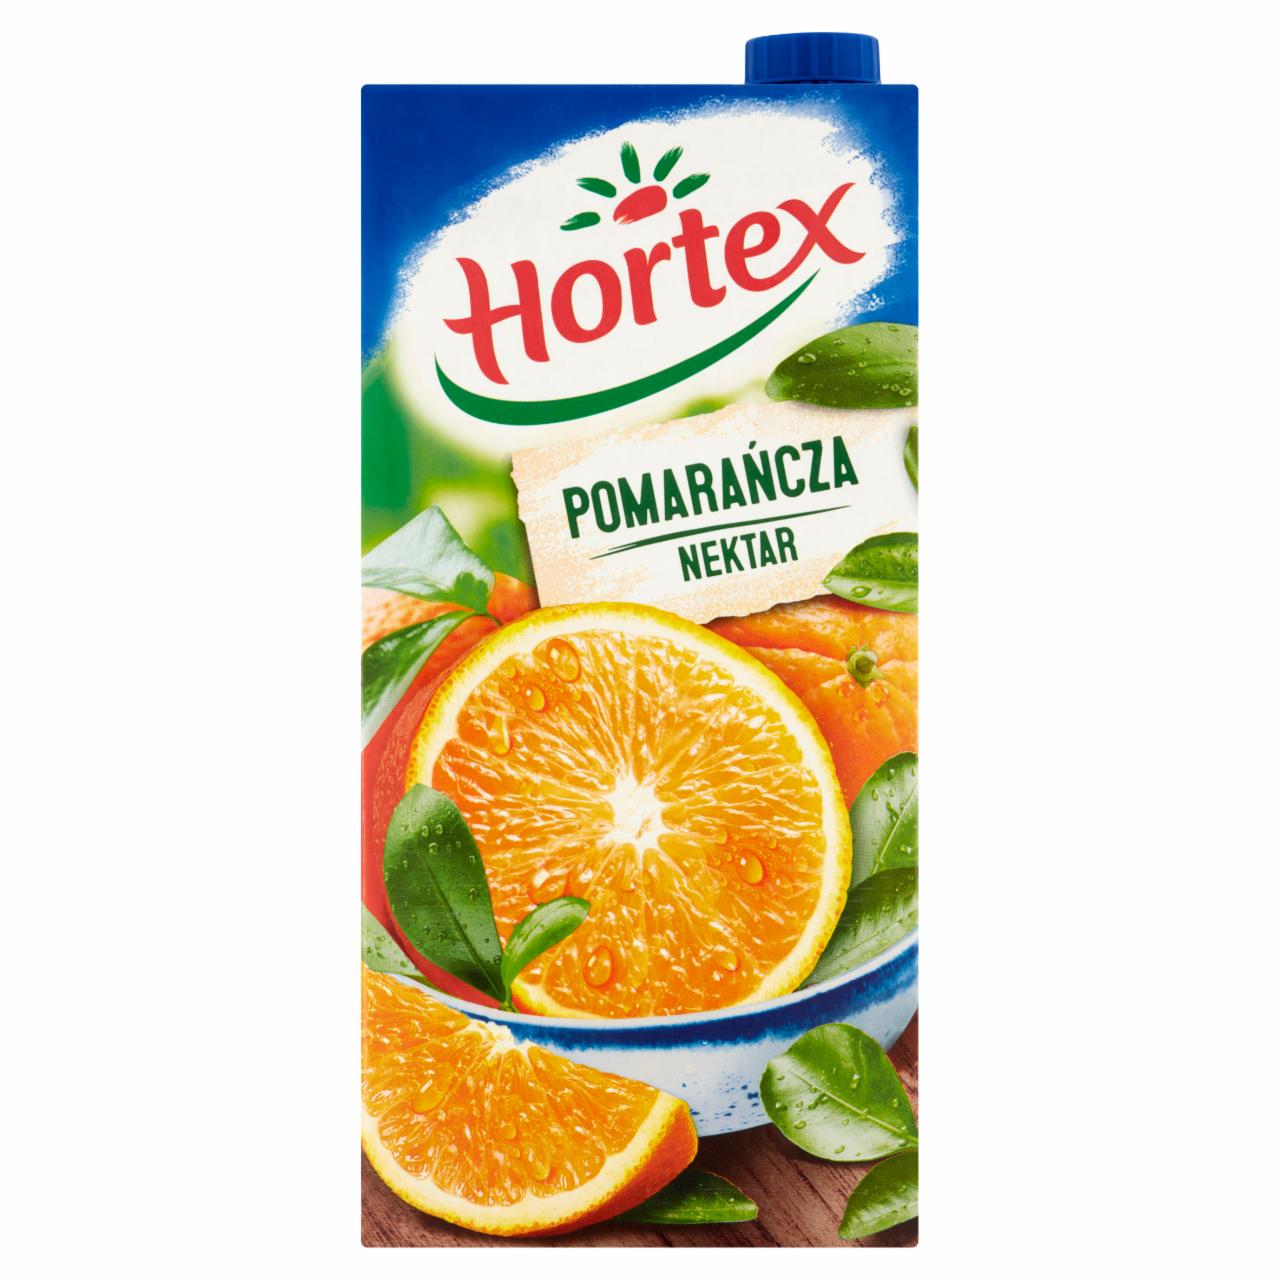 Zdjęcia - Hortex Nektar pomarańcza 2 l